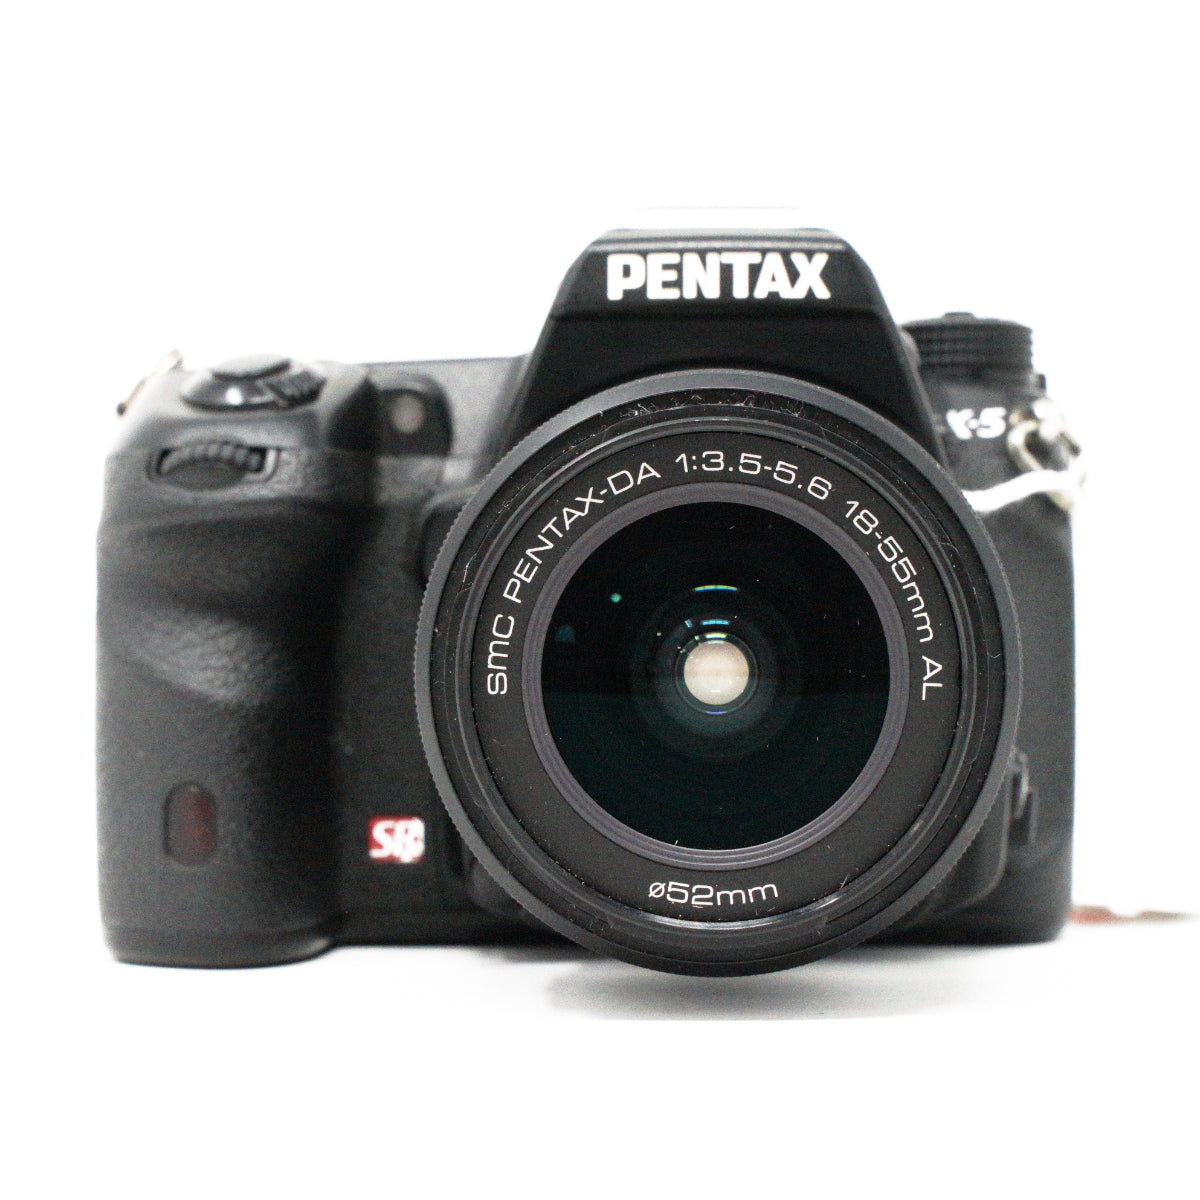 Used Pentax K-5 + 18-55mm F3.5-5.6 AL DSLR camera + 4 batteries